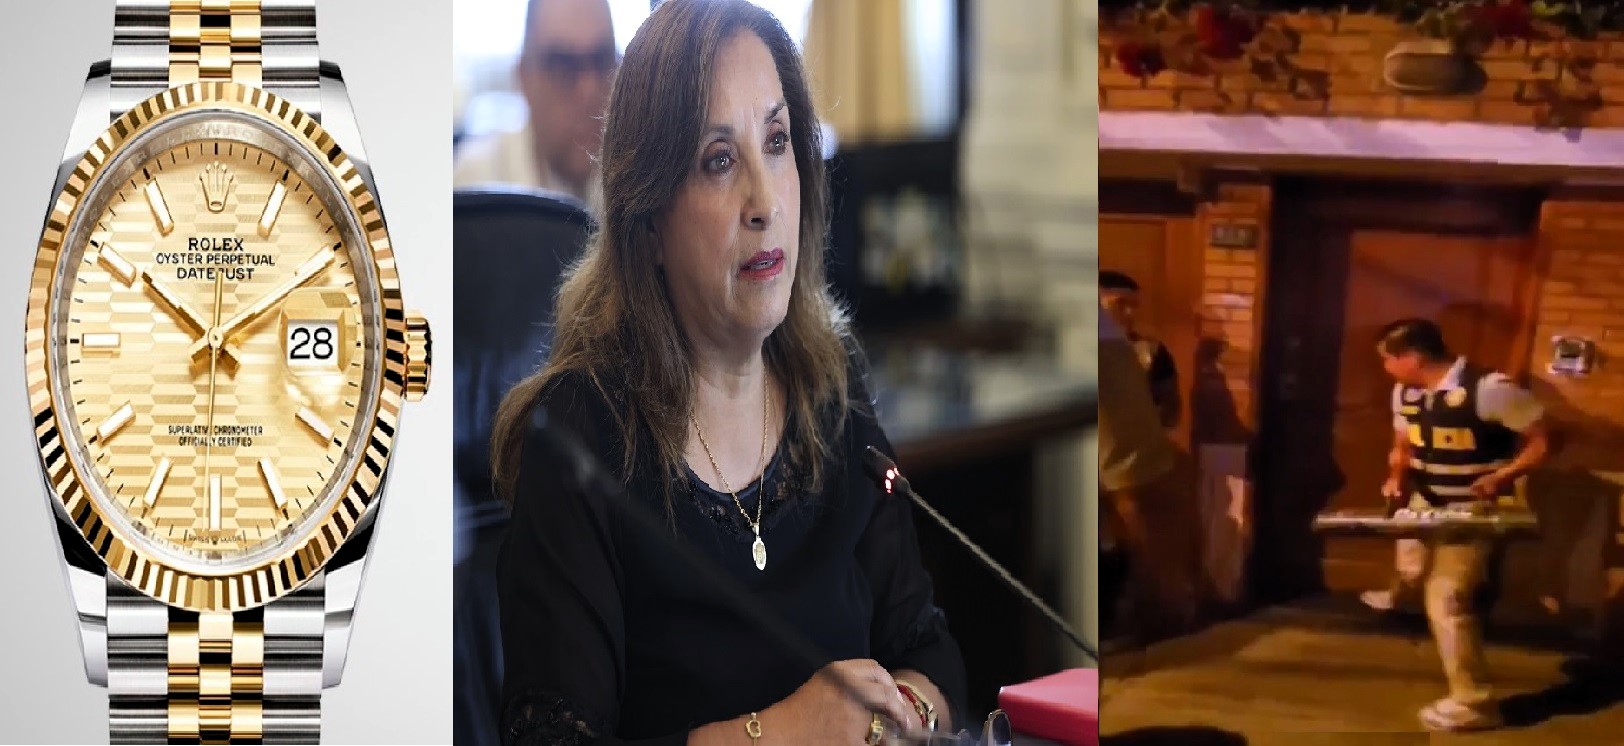 Fiscalía peruana allana domicilio de la presidenta de la nación, Dina Boluarte Zegarra, por enriquecimiento ilícito (Caso Rolex).